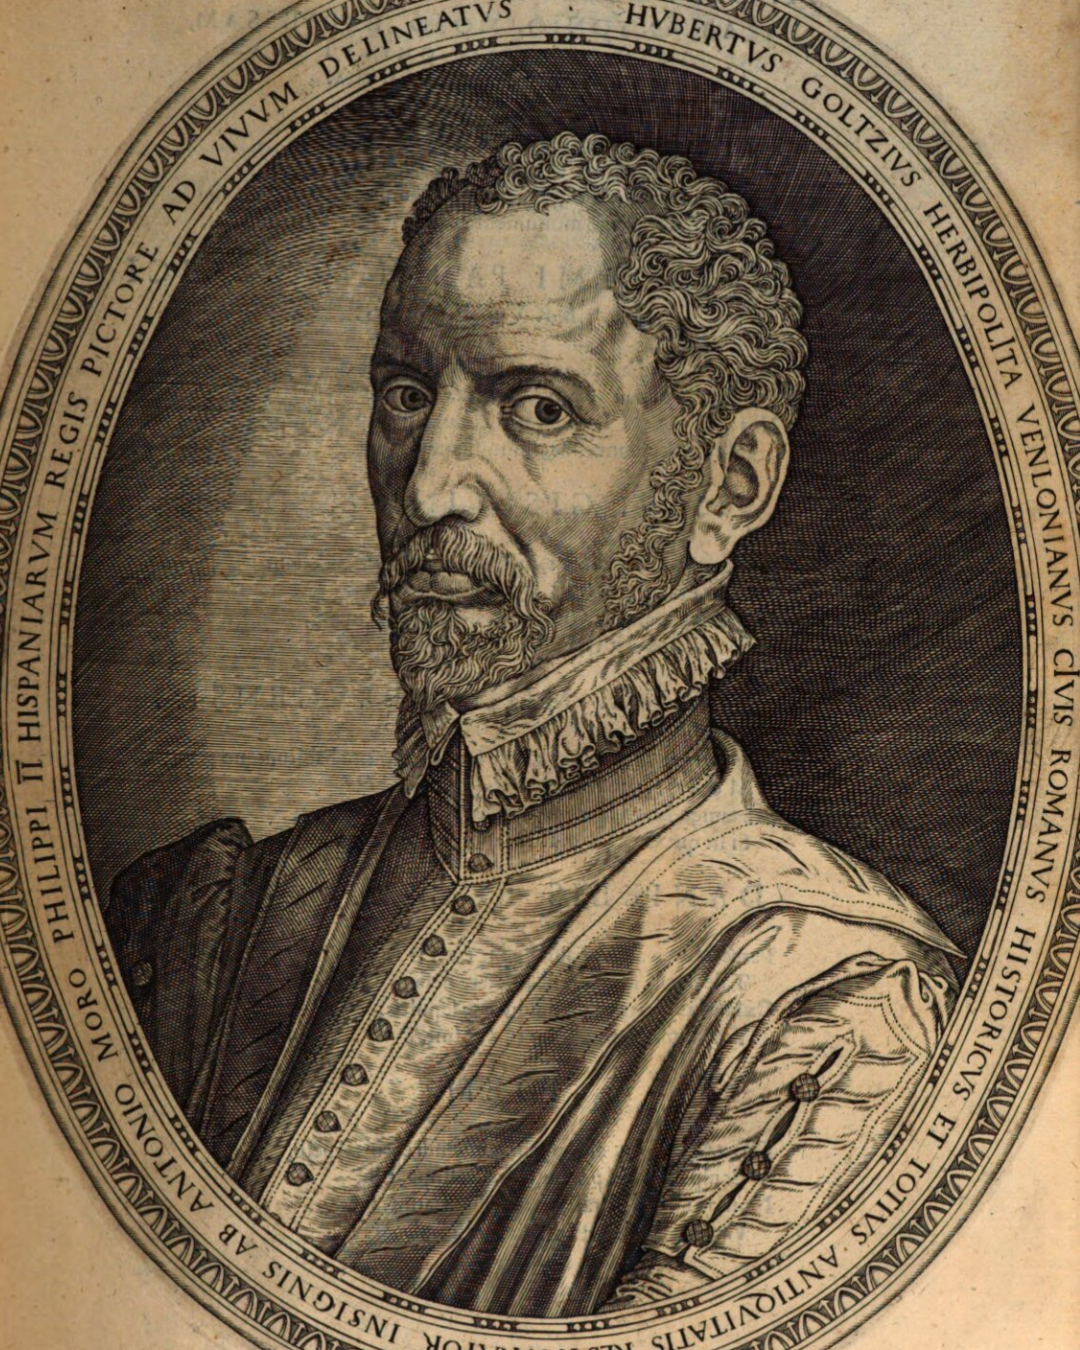 Graecia Sive Historiae urbium Et Populorum Graeciae Ex Antiquis Numismatibus Restitutae, volume 1 (Bruges: Brvgis Flandrorvm, 1576), 7